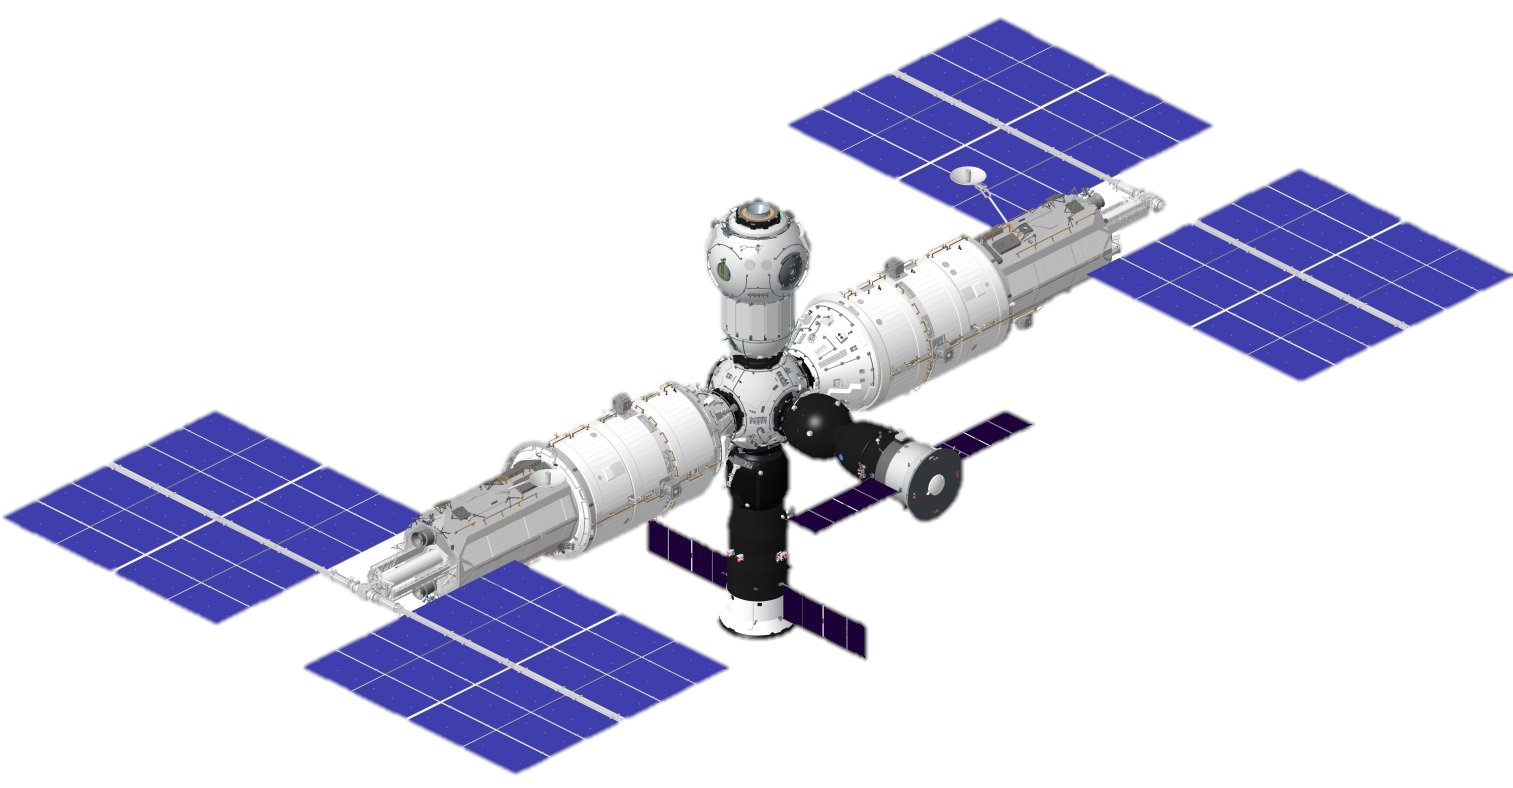 E7oCVUcWQAk7Q9W - روسیه از طرح ایستگاه فضایی ROSS رونمایی کرد